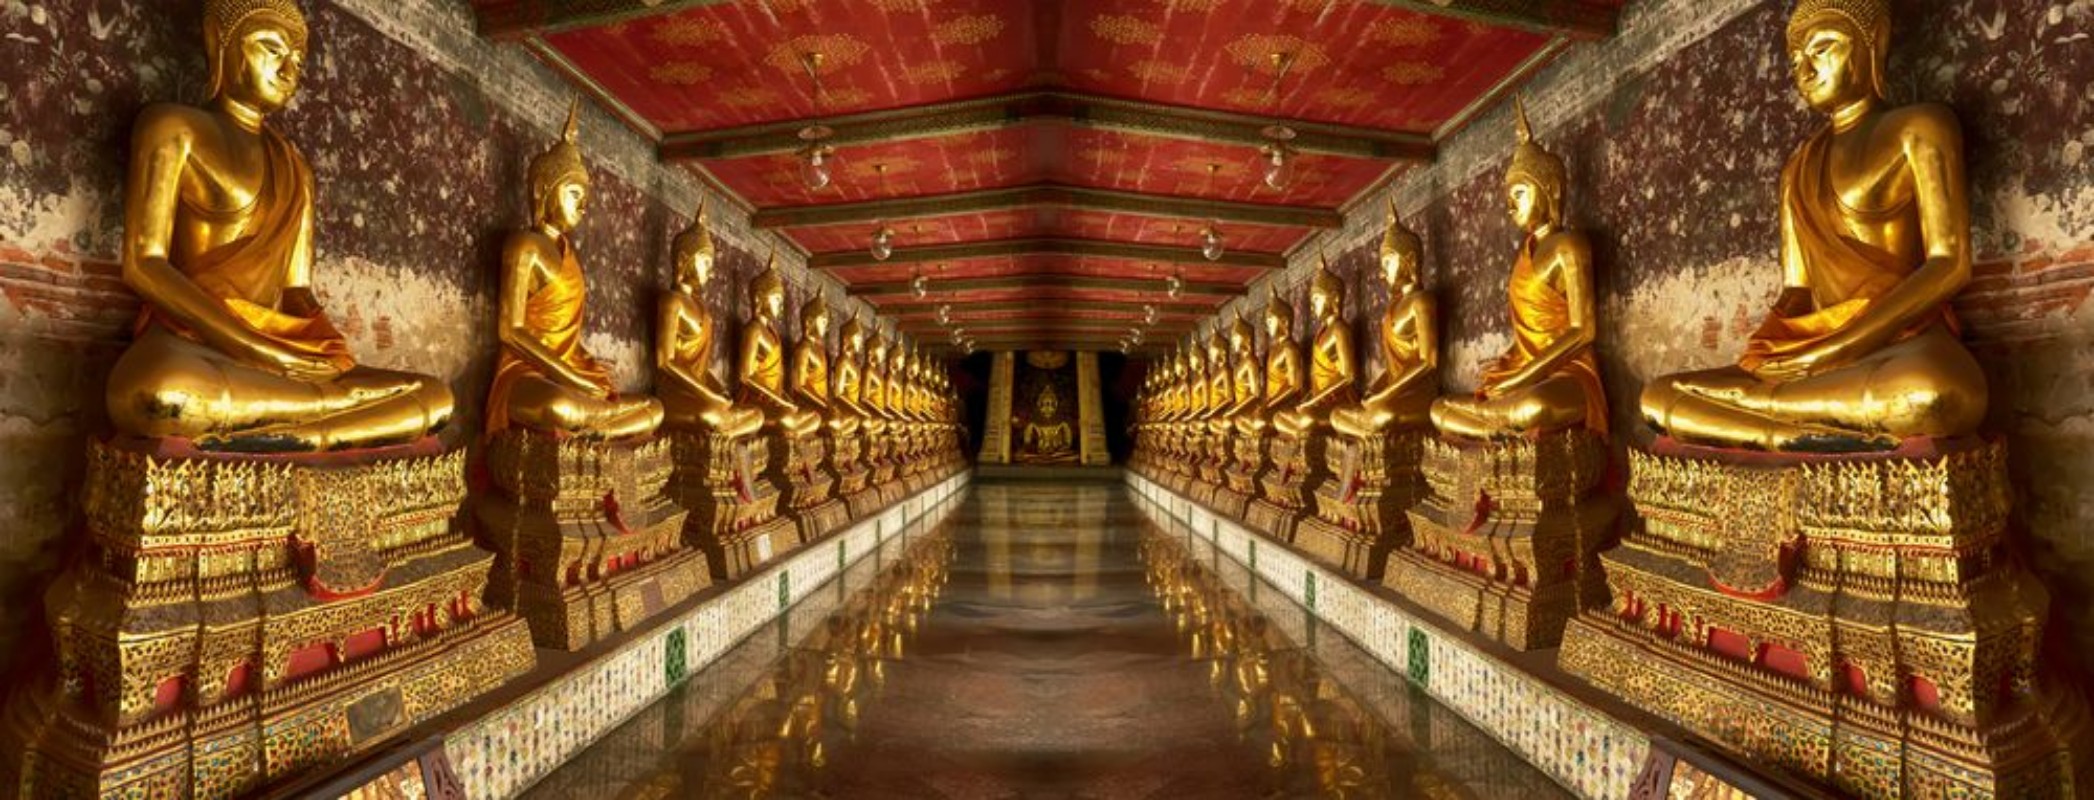 Picture of Landmark of Wat Suthat